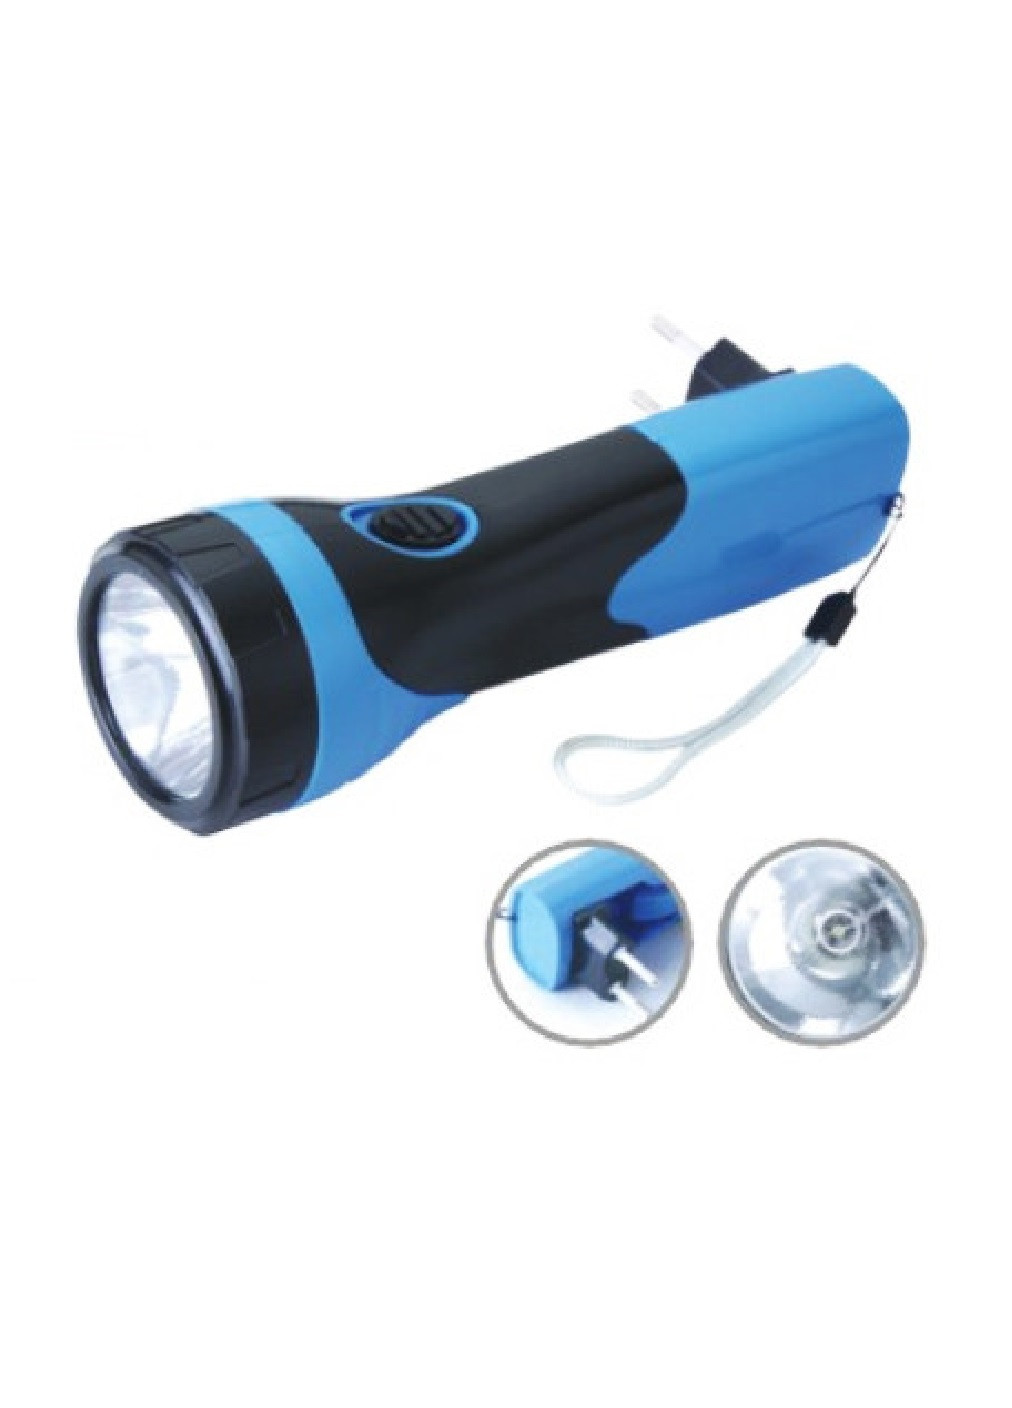 Ліхтар світлодіодний компактний переносний ручний для полювання риболовлі туризму кемпінгу 400мАч (473643-Prob) Чорно-синій Unbranded (255878342)